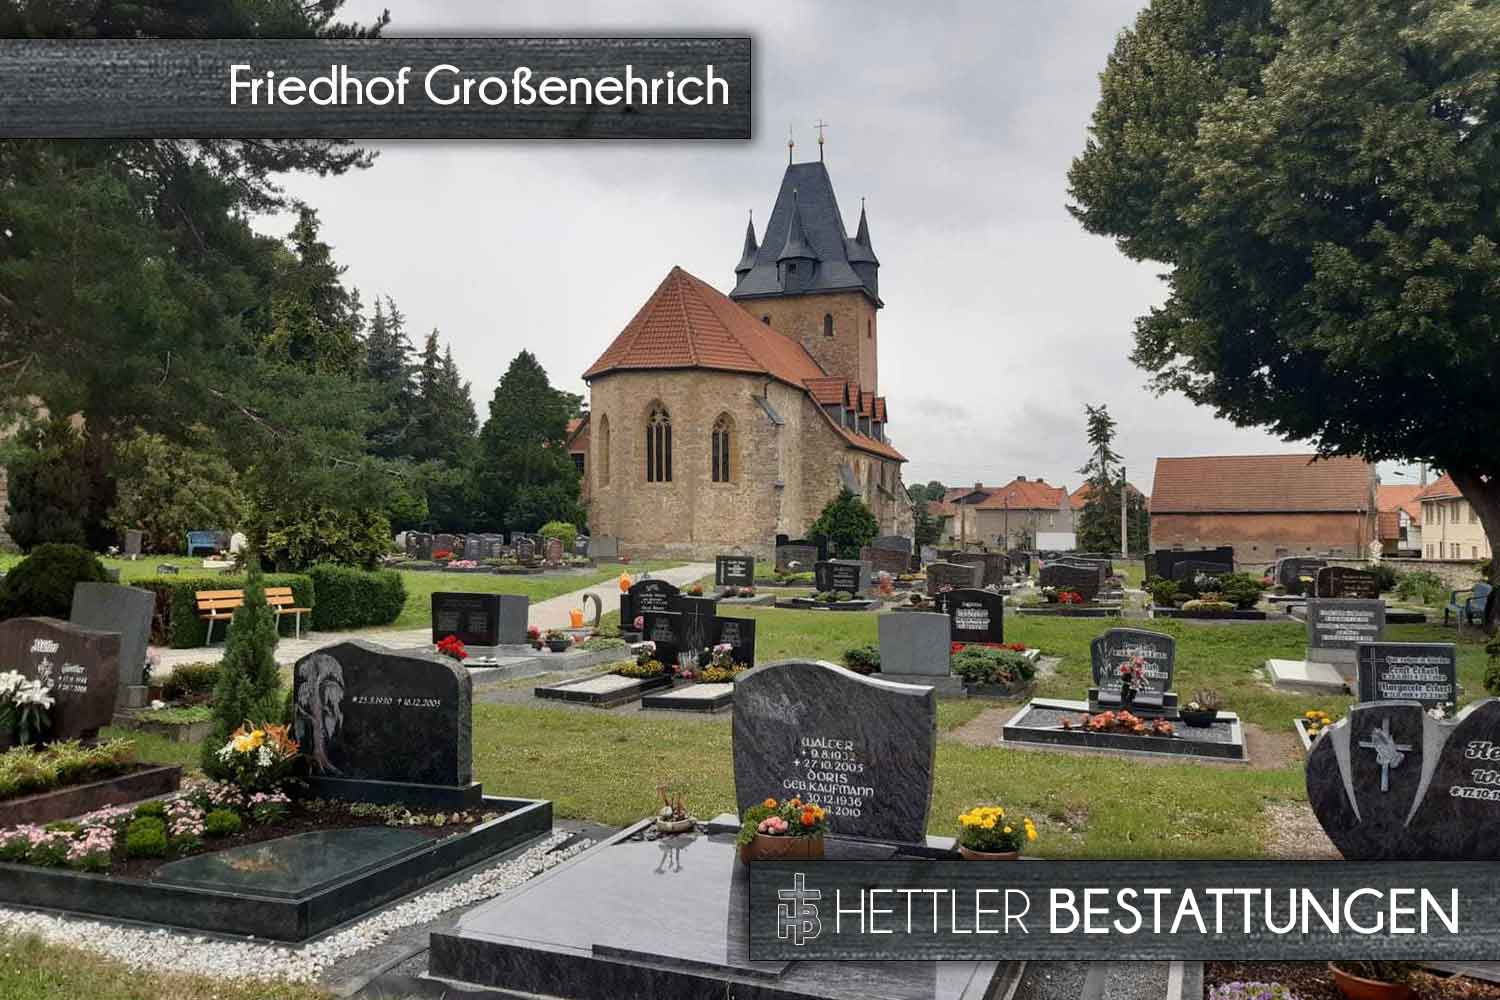 Friedhof in Großenehrich. Ihr Ort des Abschieds mit Hettler Bestattungen.